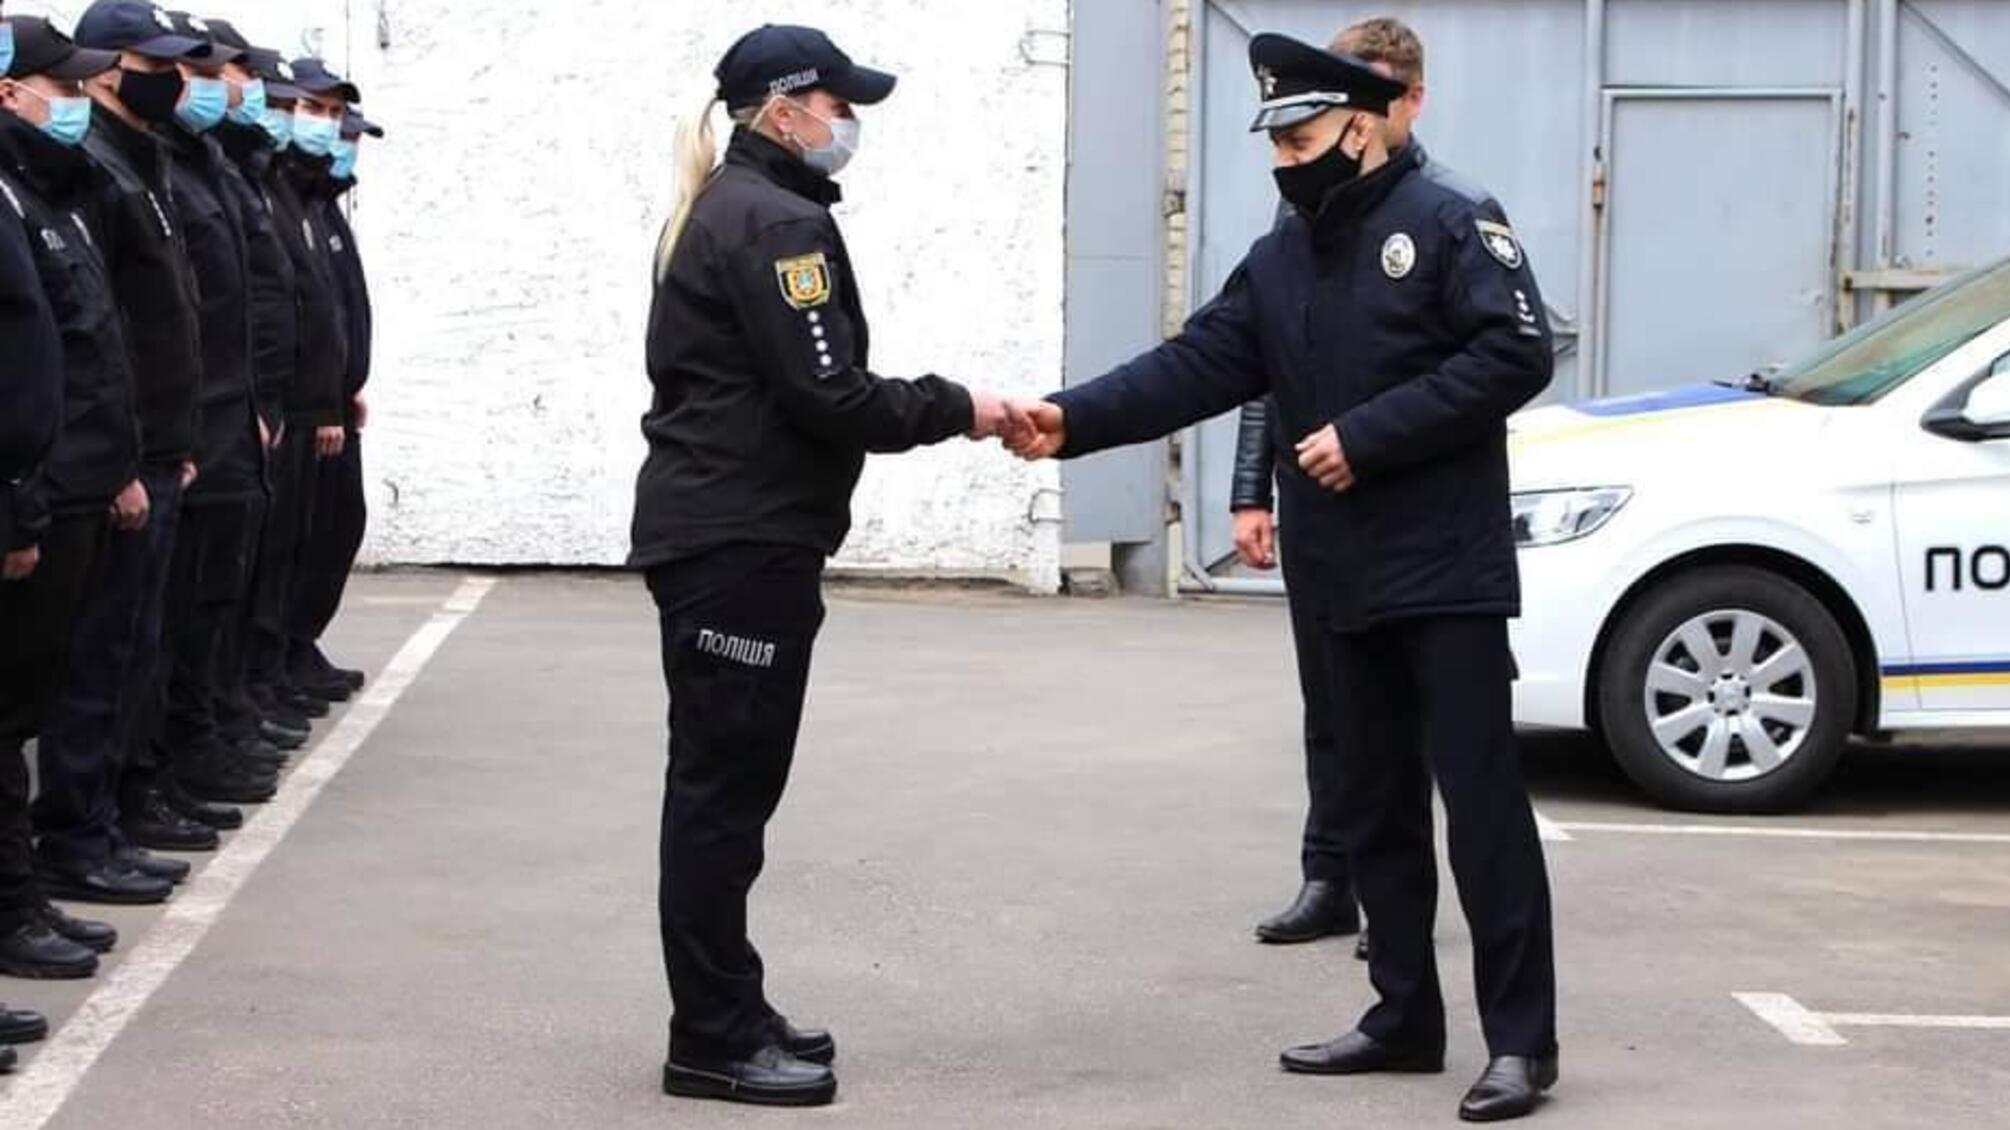 Службовий  автопарк Подільського районного управління поліції поповнився новеньким «PEUGEOT»